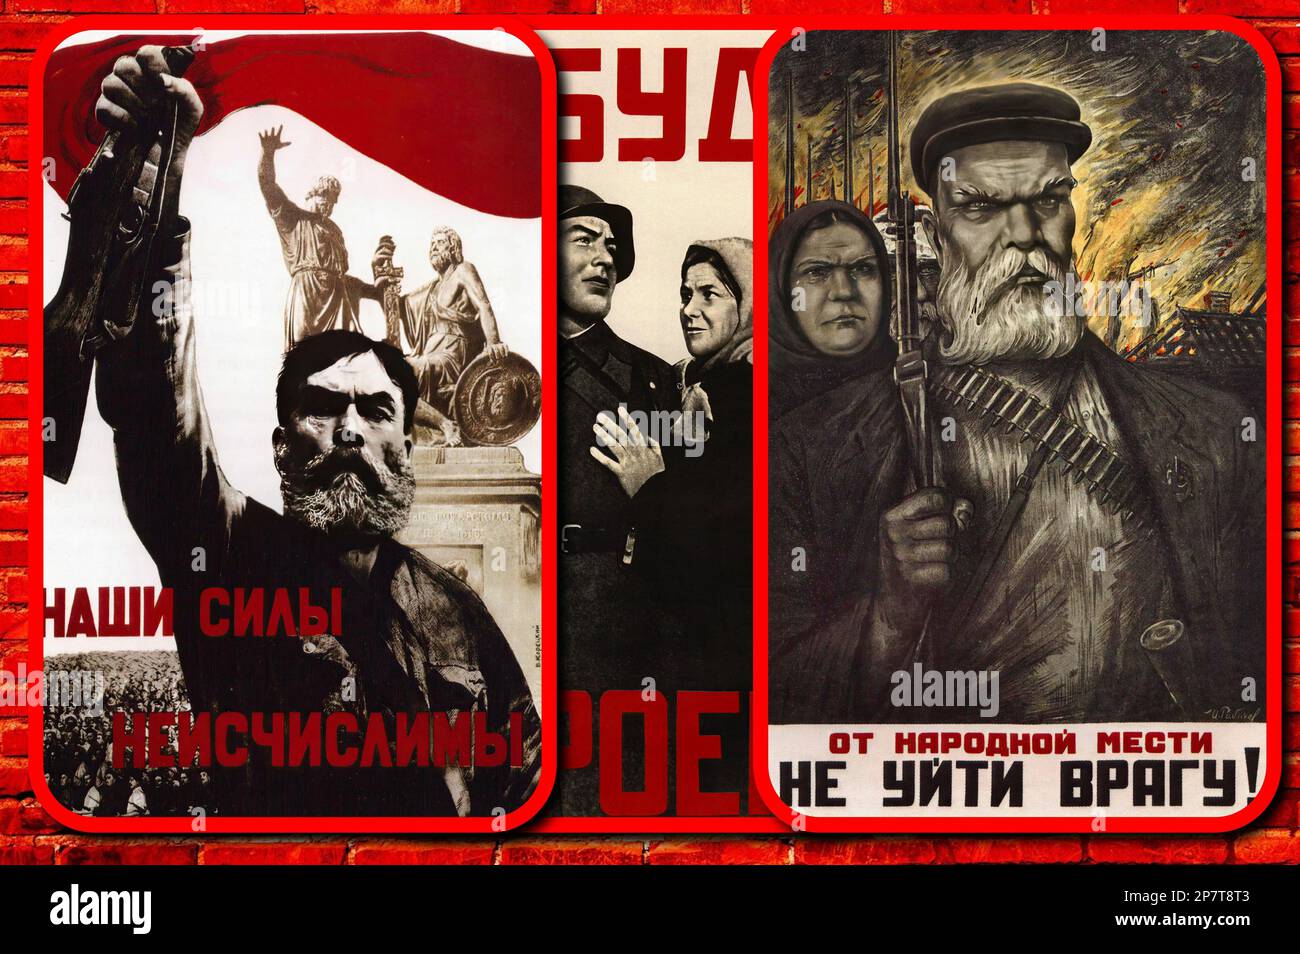 Carteles de propaganda soviética (CCCP, URSS) alabando la invencibilidad del pueblo soviético. Foto de stock